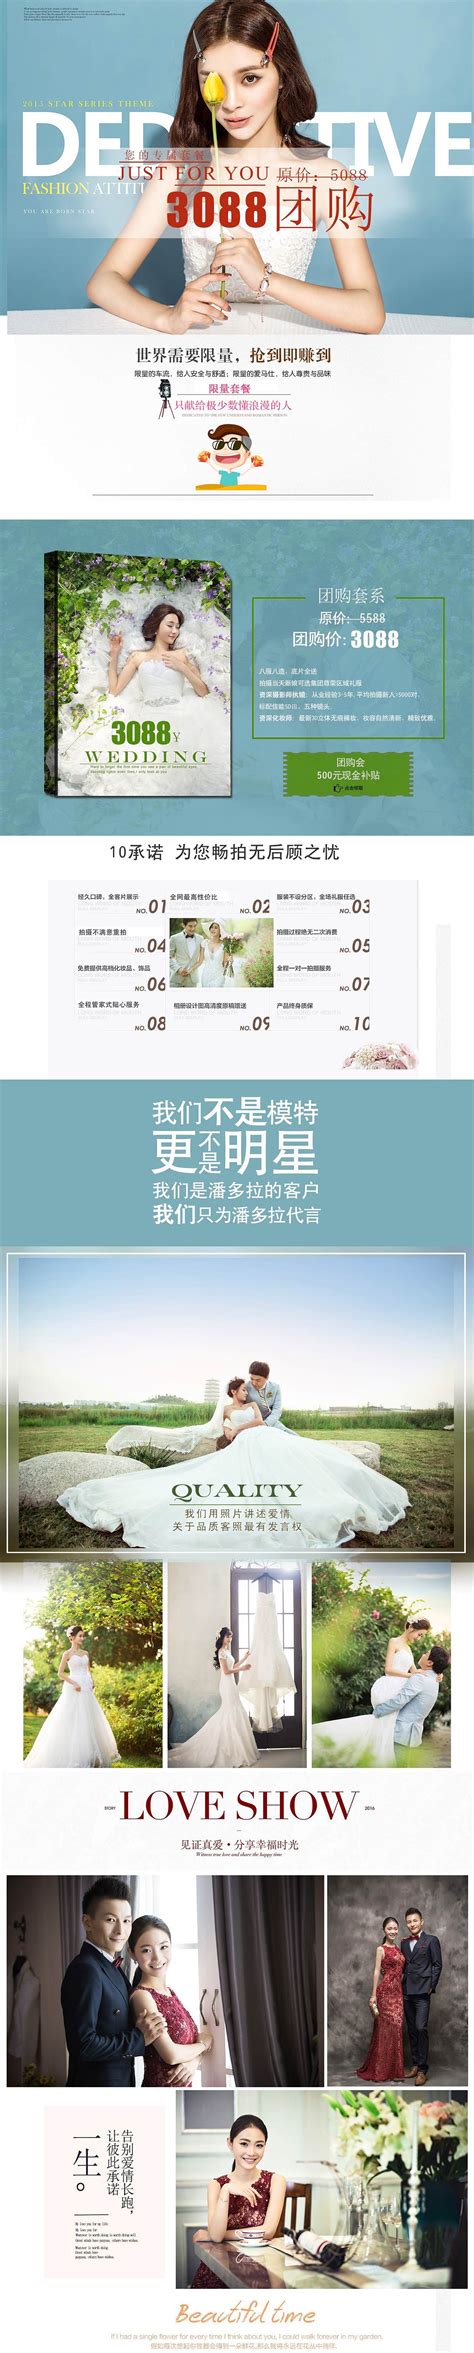 哪家的婚纱摄影实惠拍的好 - 中国婚博会官网